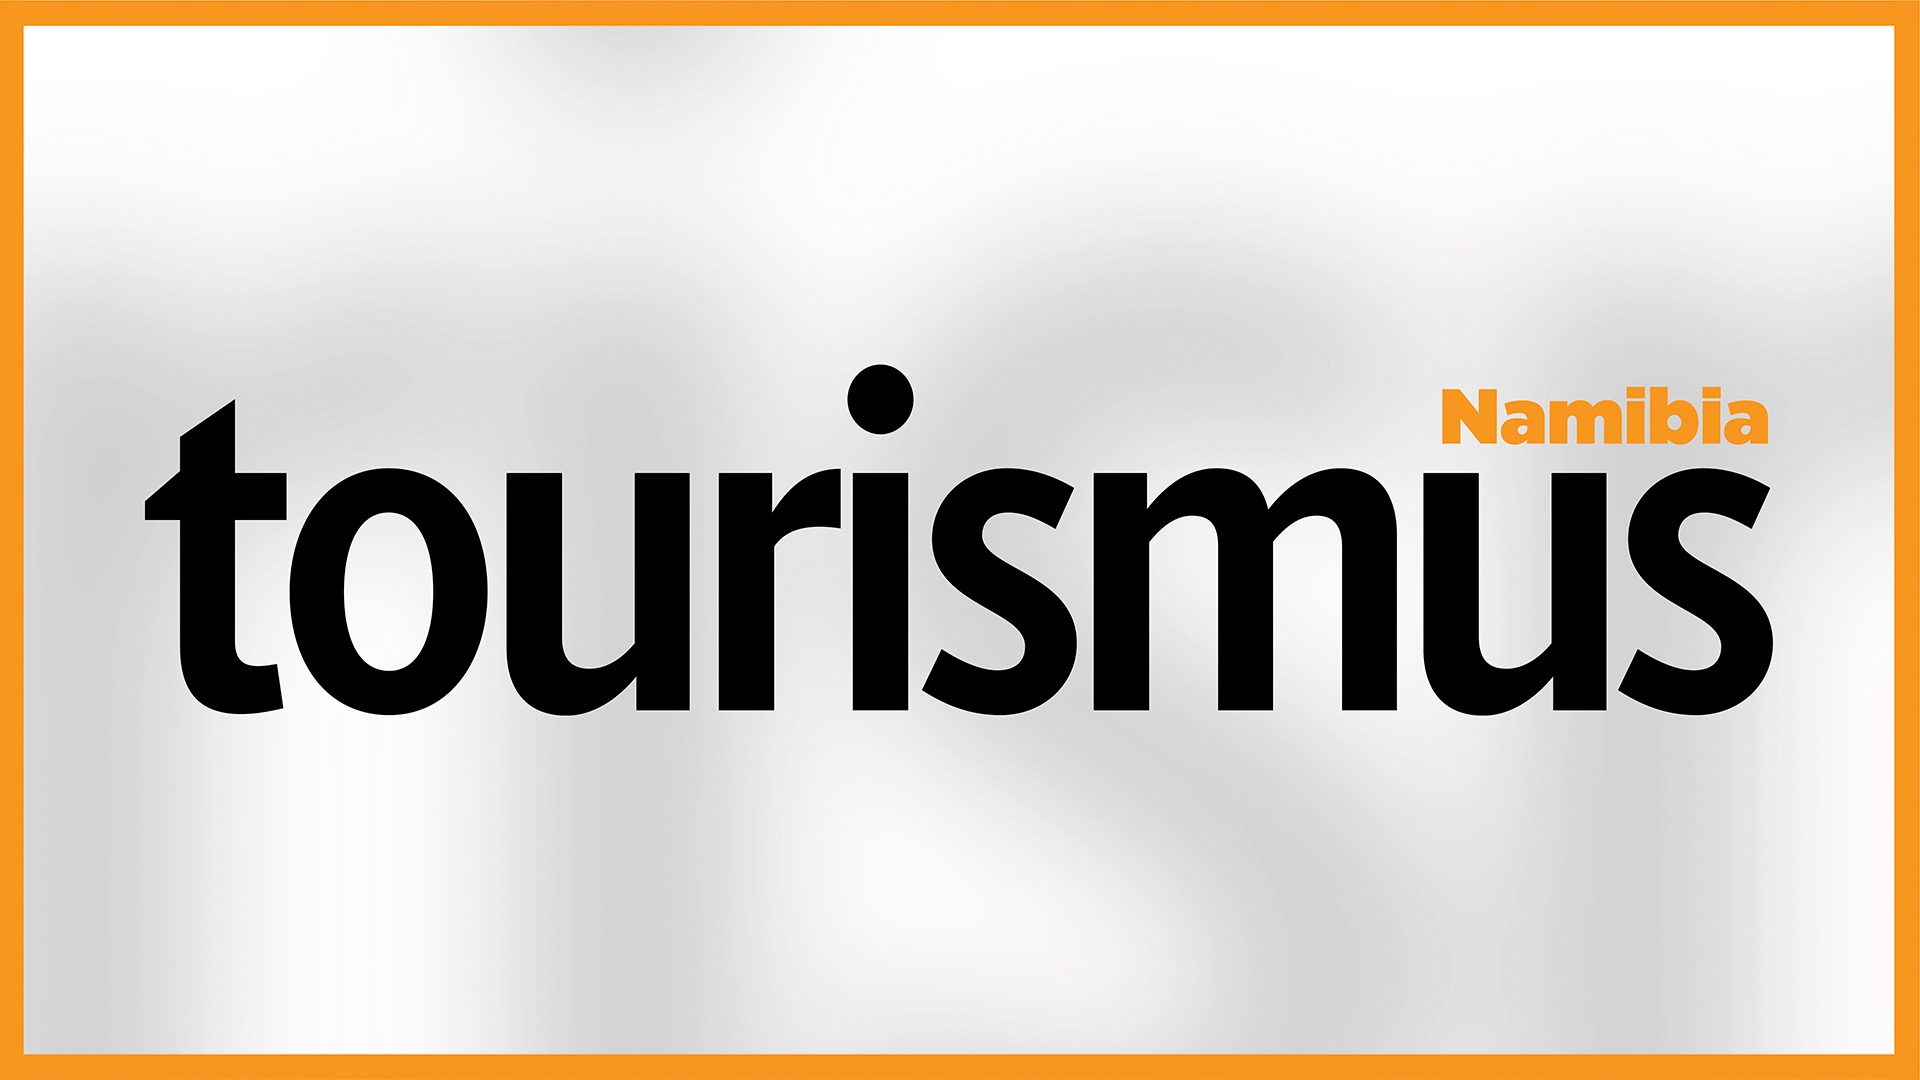 Tourismus Namibia (English) - 19 December 2021